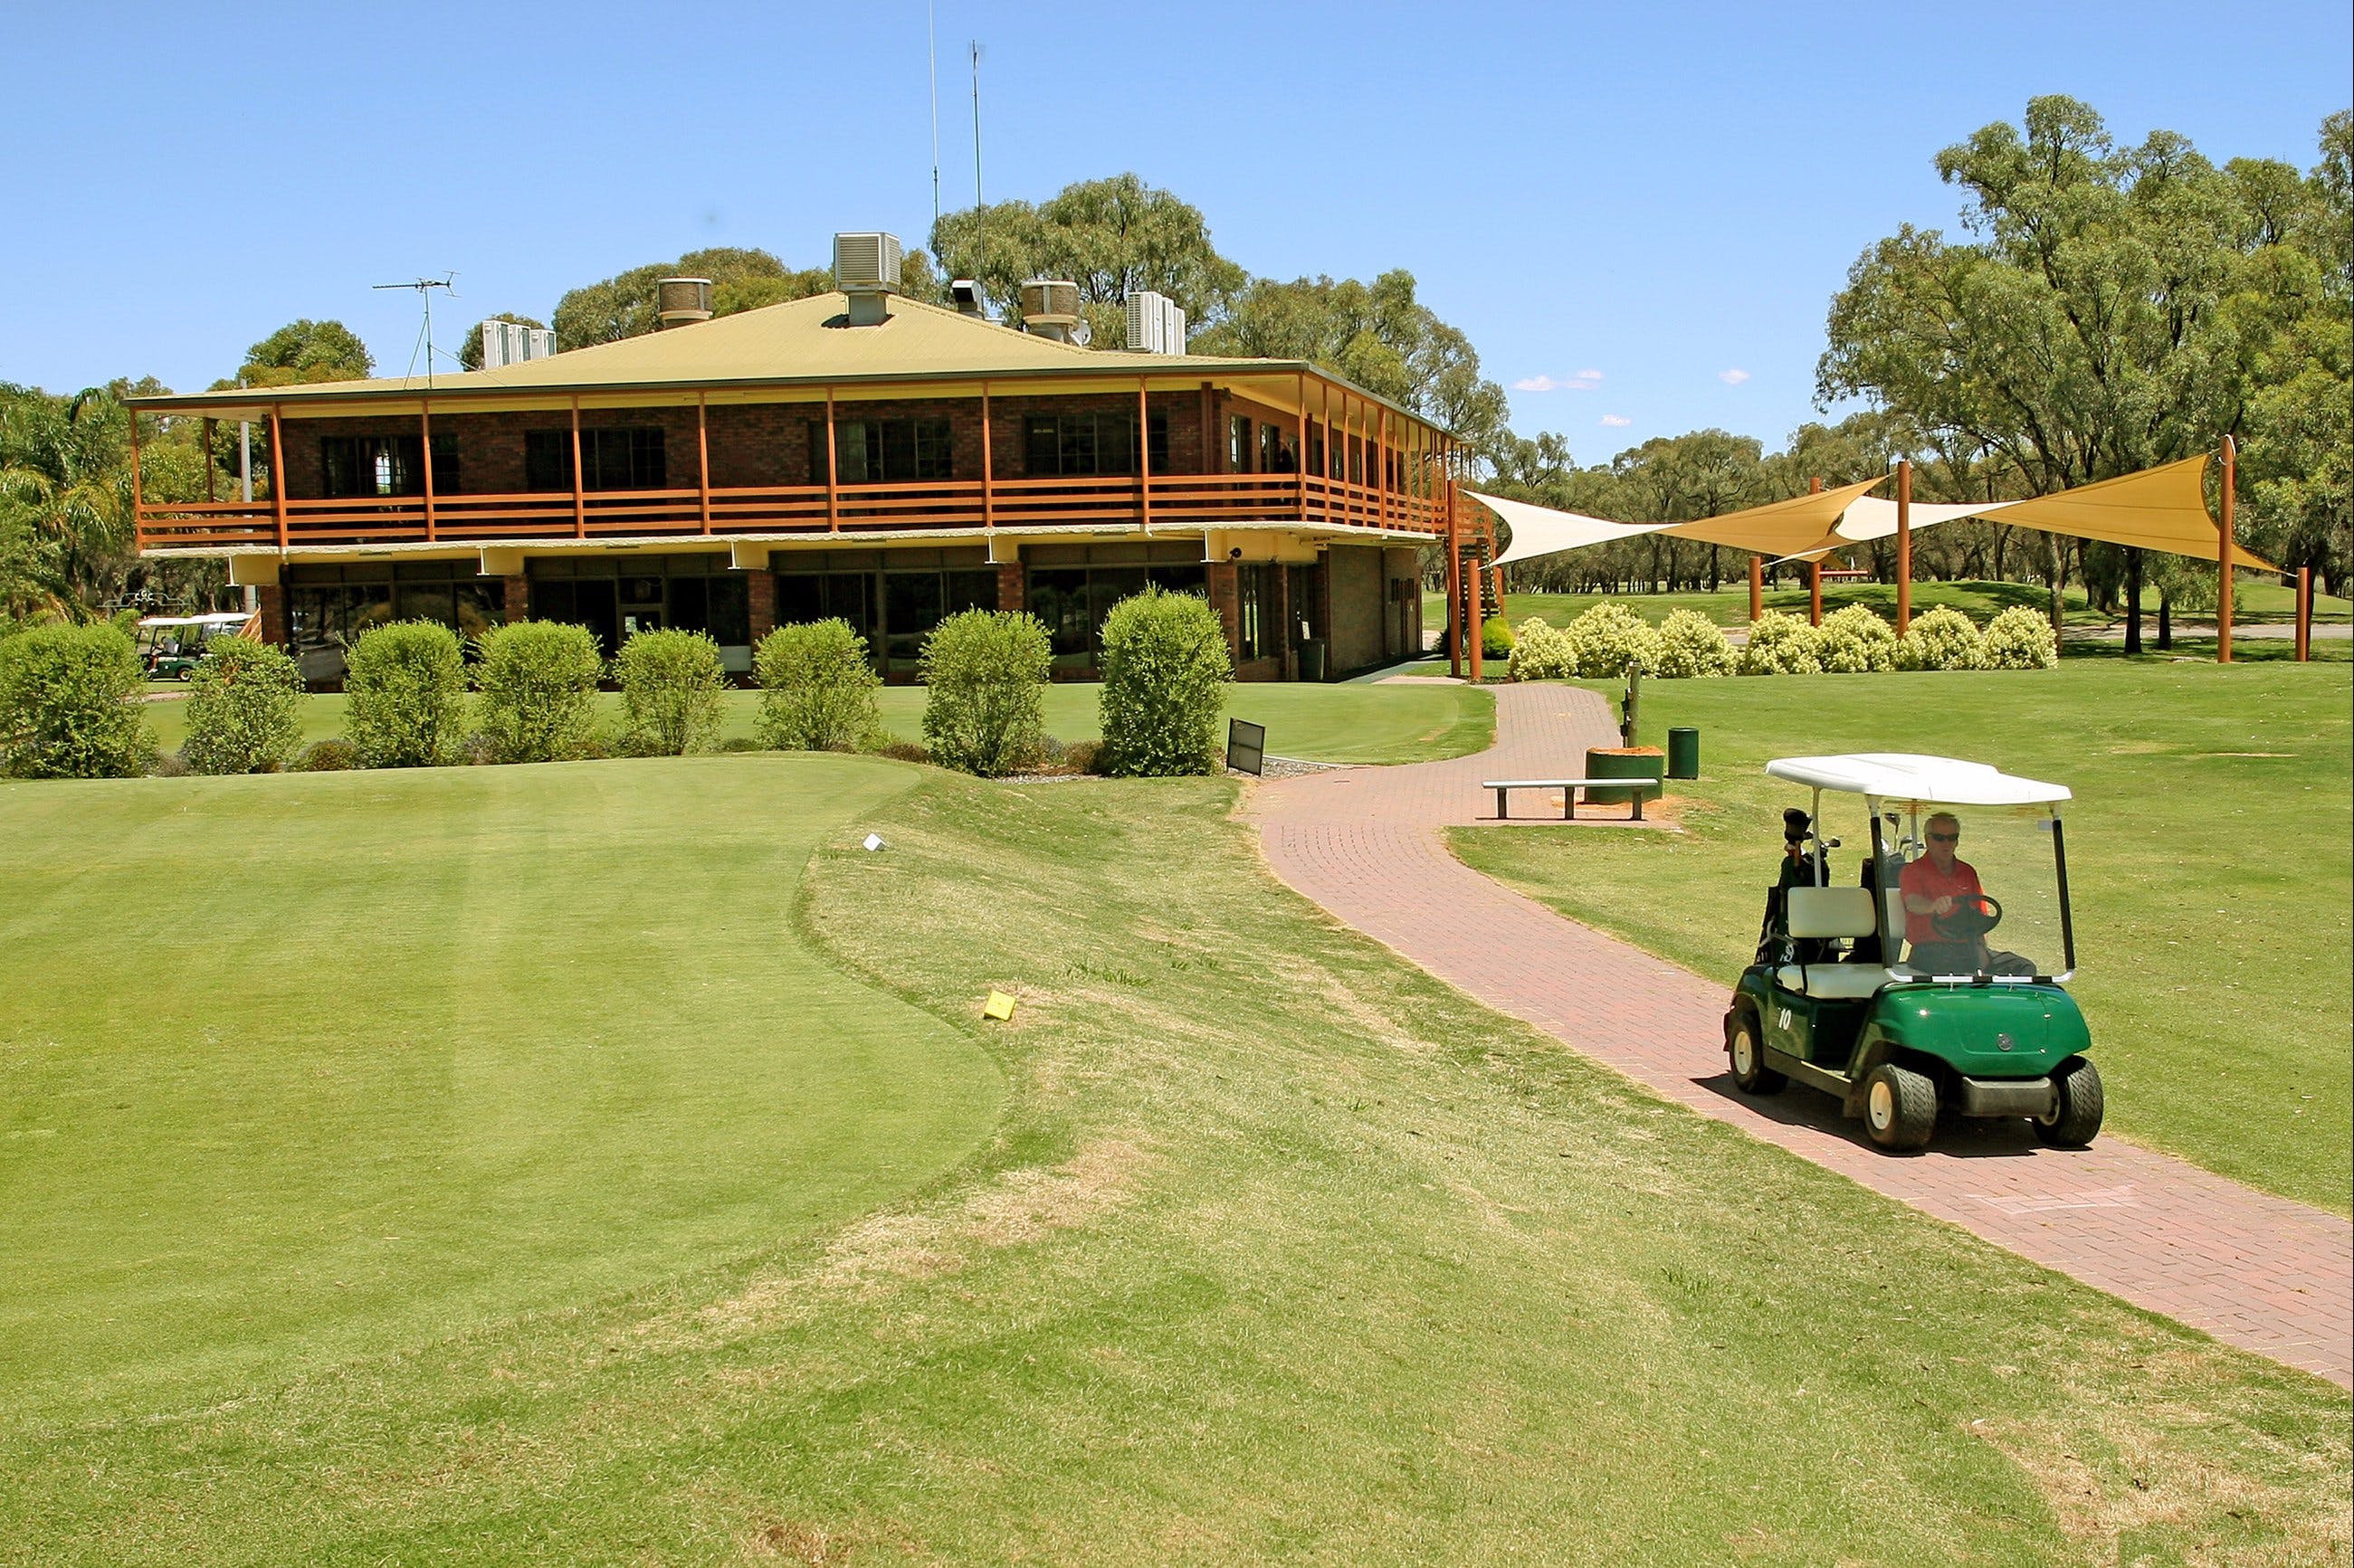 Coomealla Golf Club - WA Accommodation